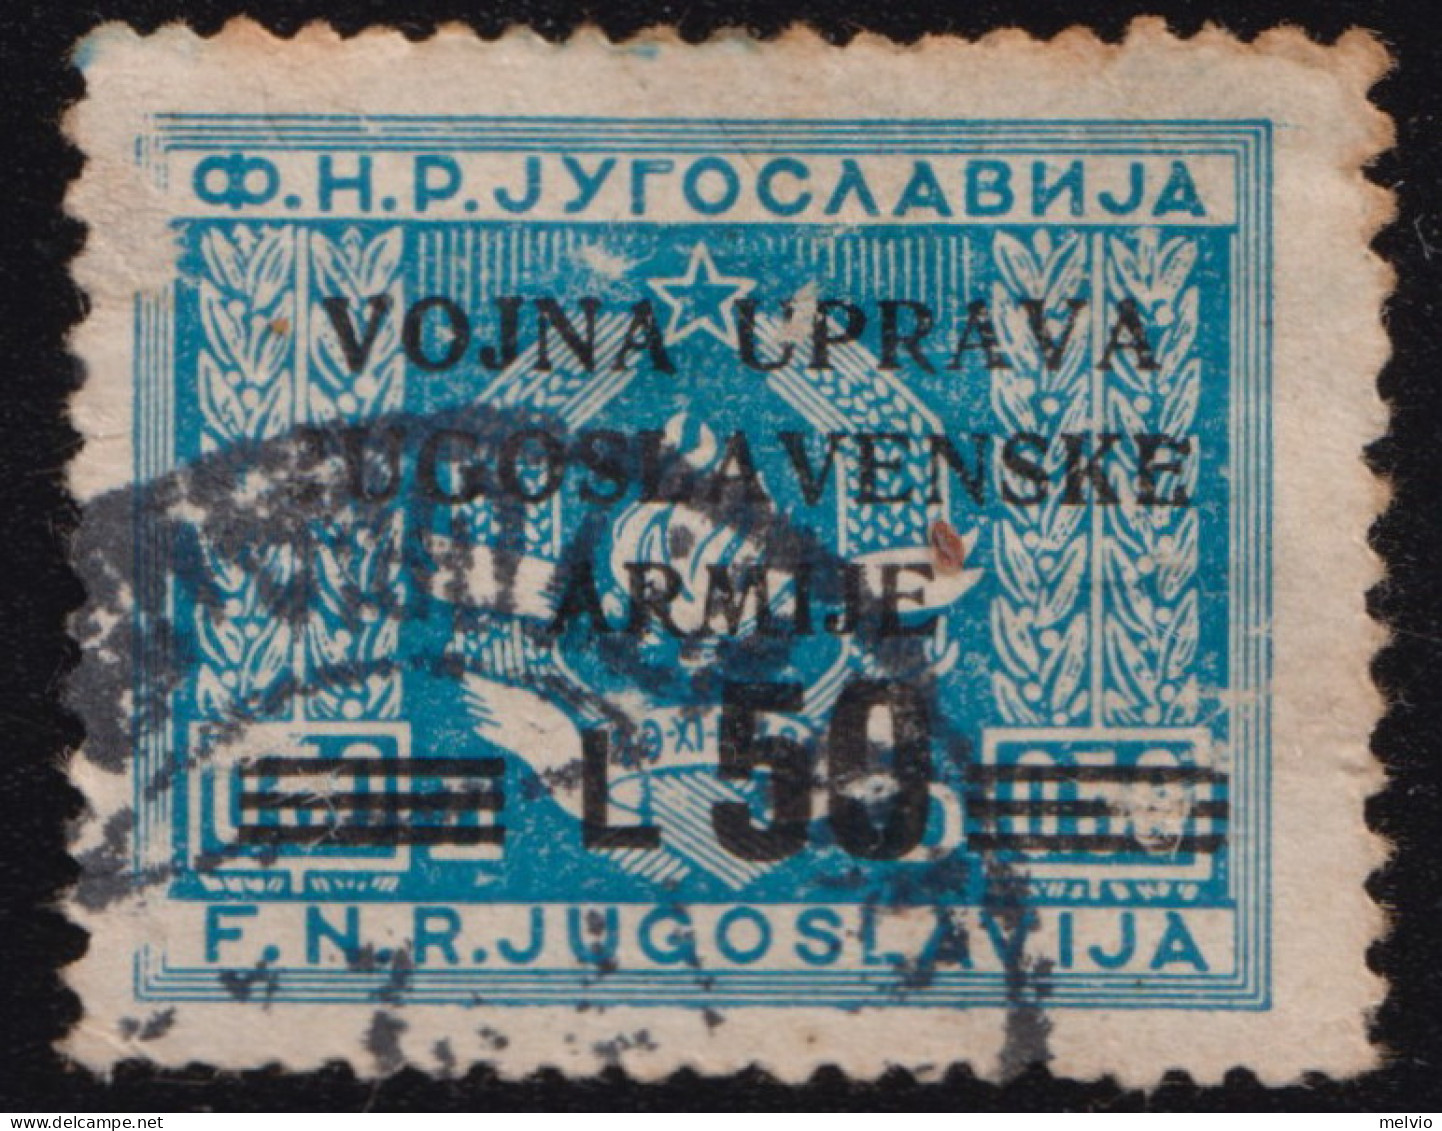 1947-Litorale Sloveno Occup.Jugoslava (O=used) L.50 Su 0.50 - Yugoslavian Occ.: Slovenian Shore